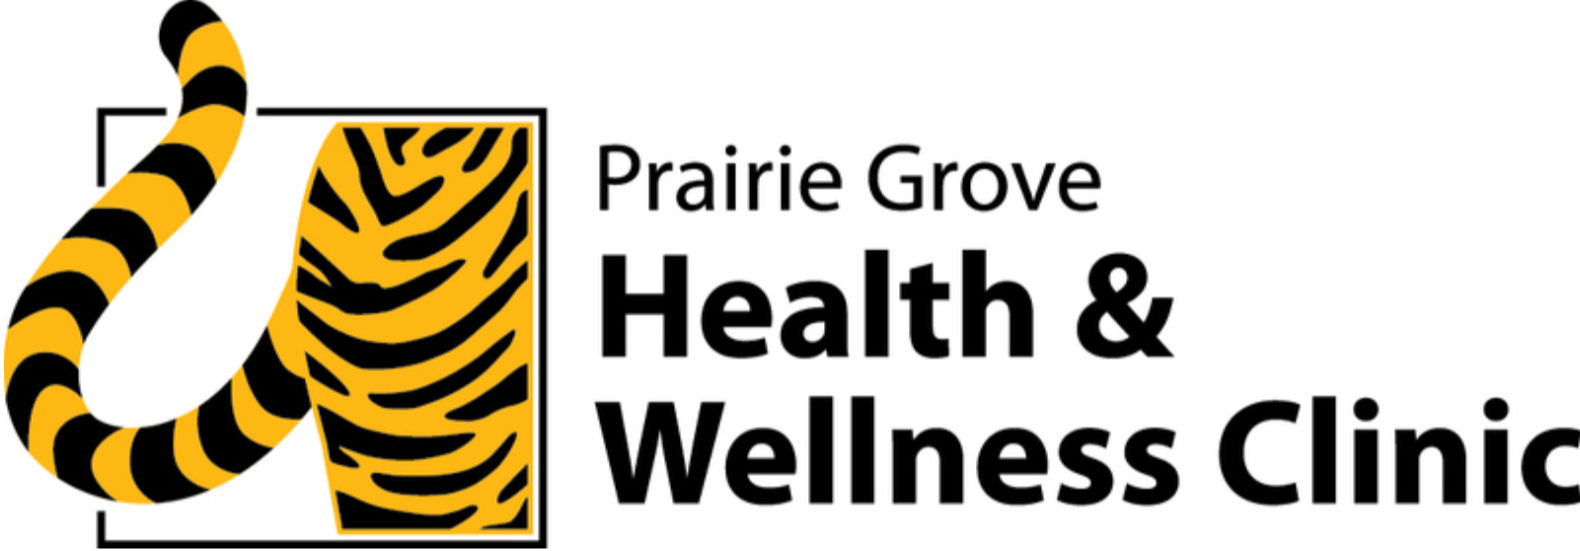 Prairie Grove Health & Wellness Clinic